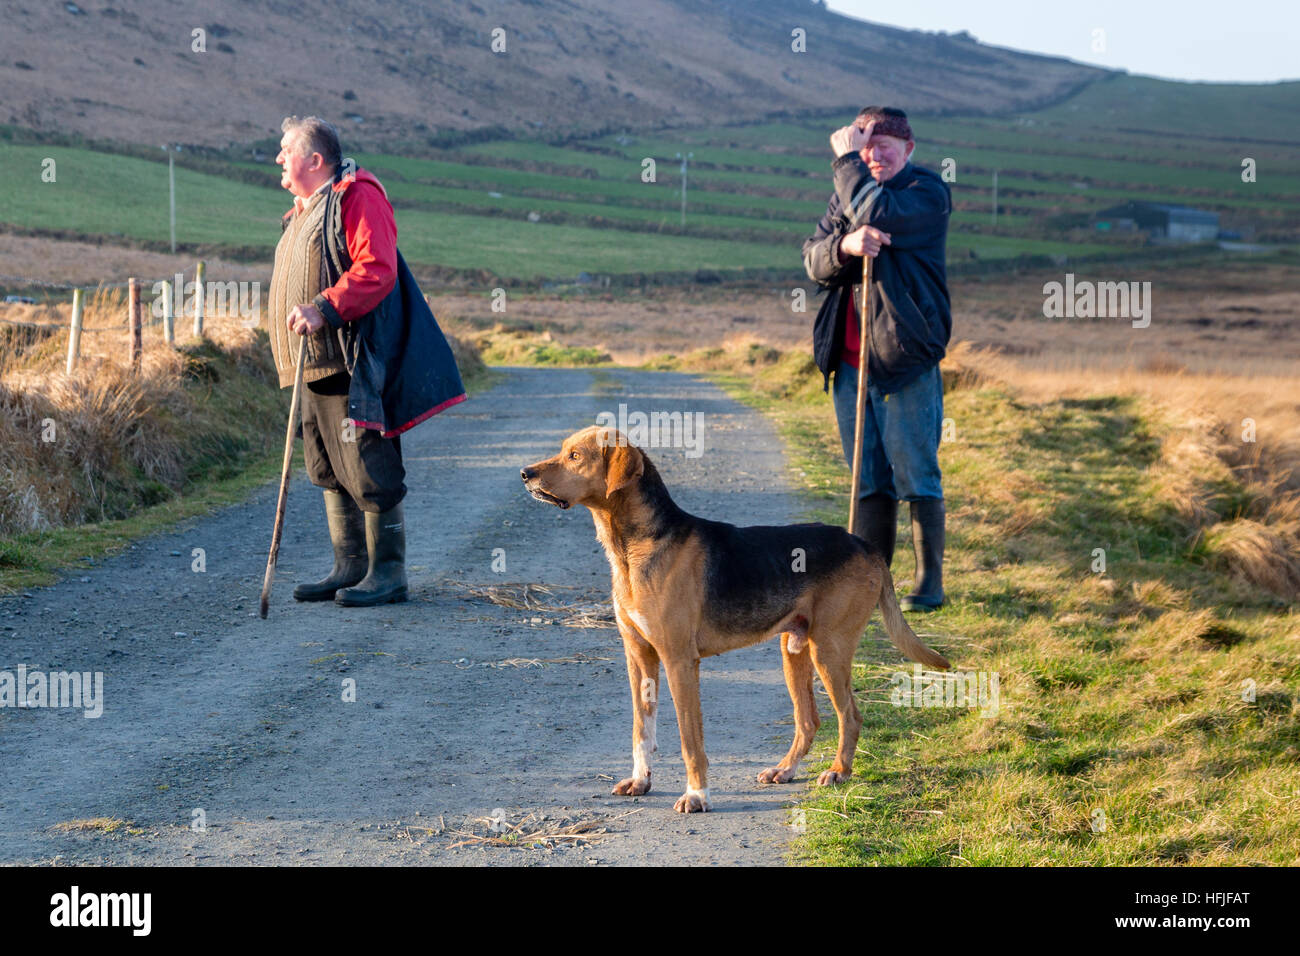 La chasse avec des chiens, Valentia Island, comté de Kerry, Irlande Banque D'Images